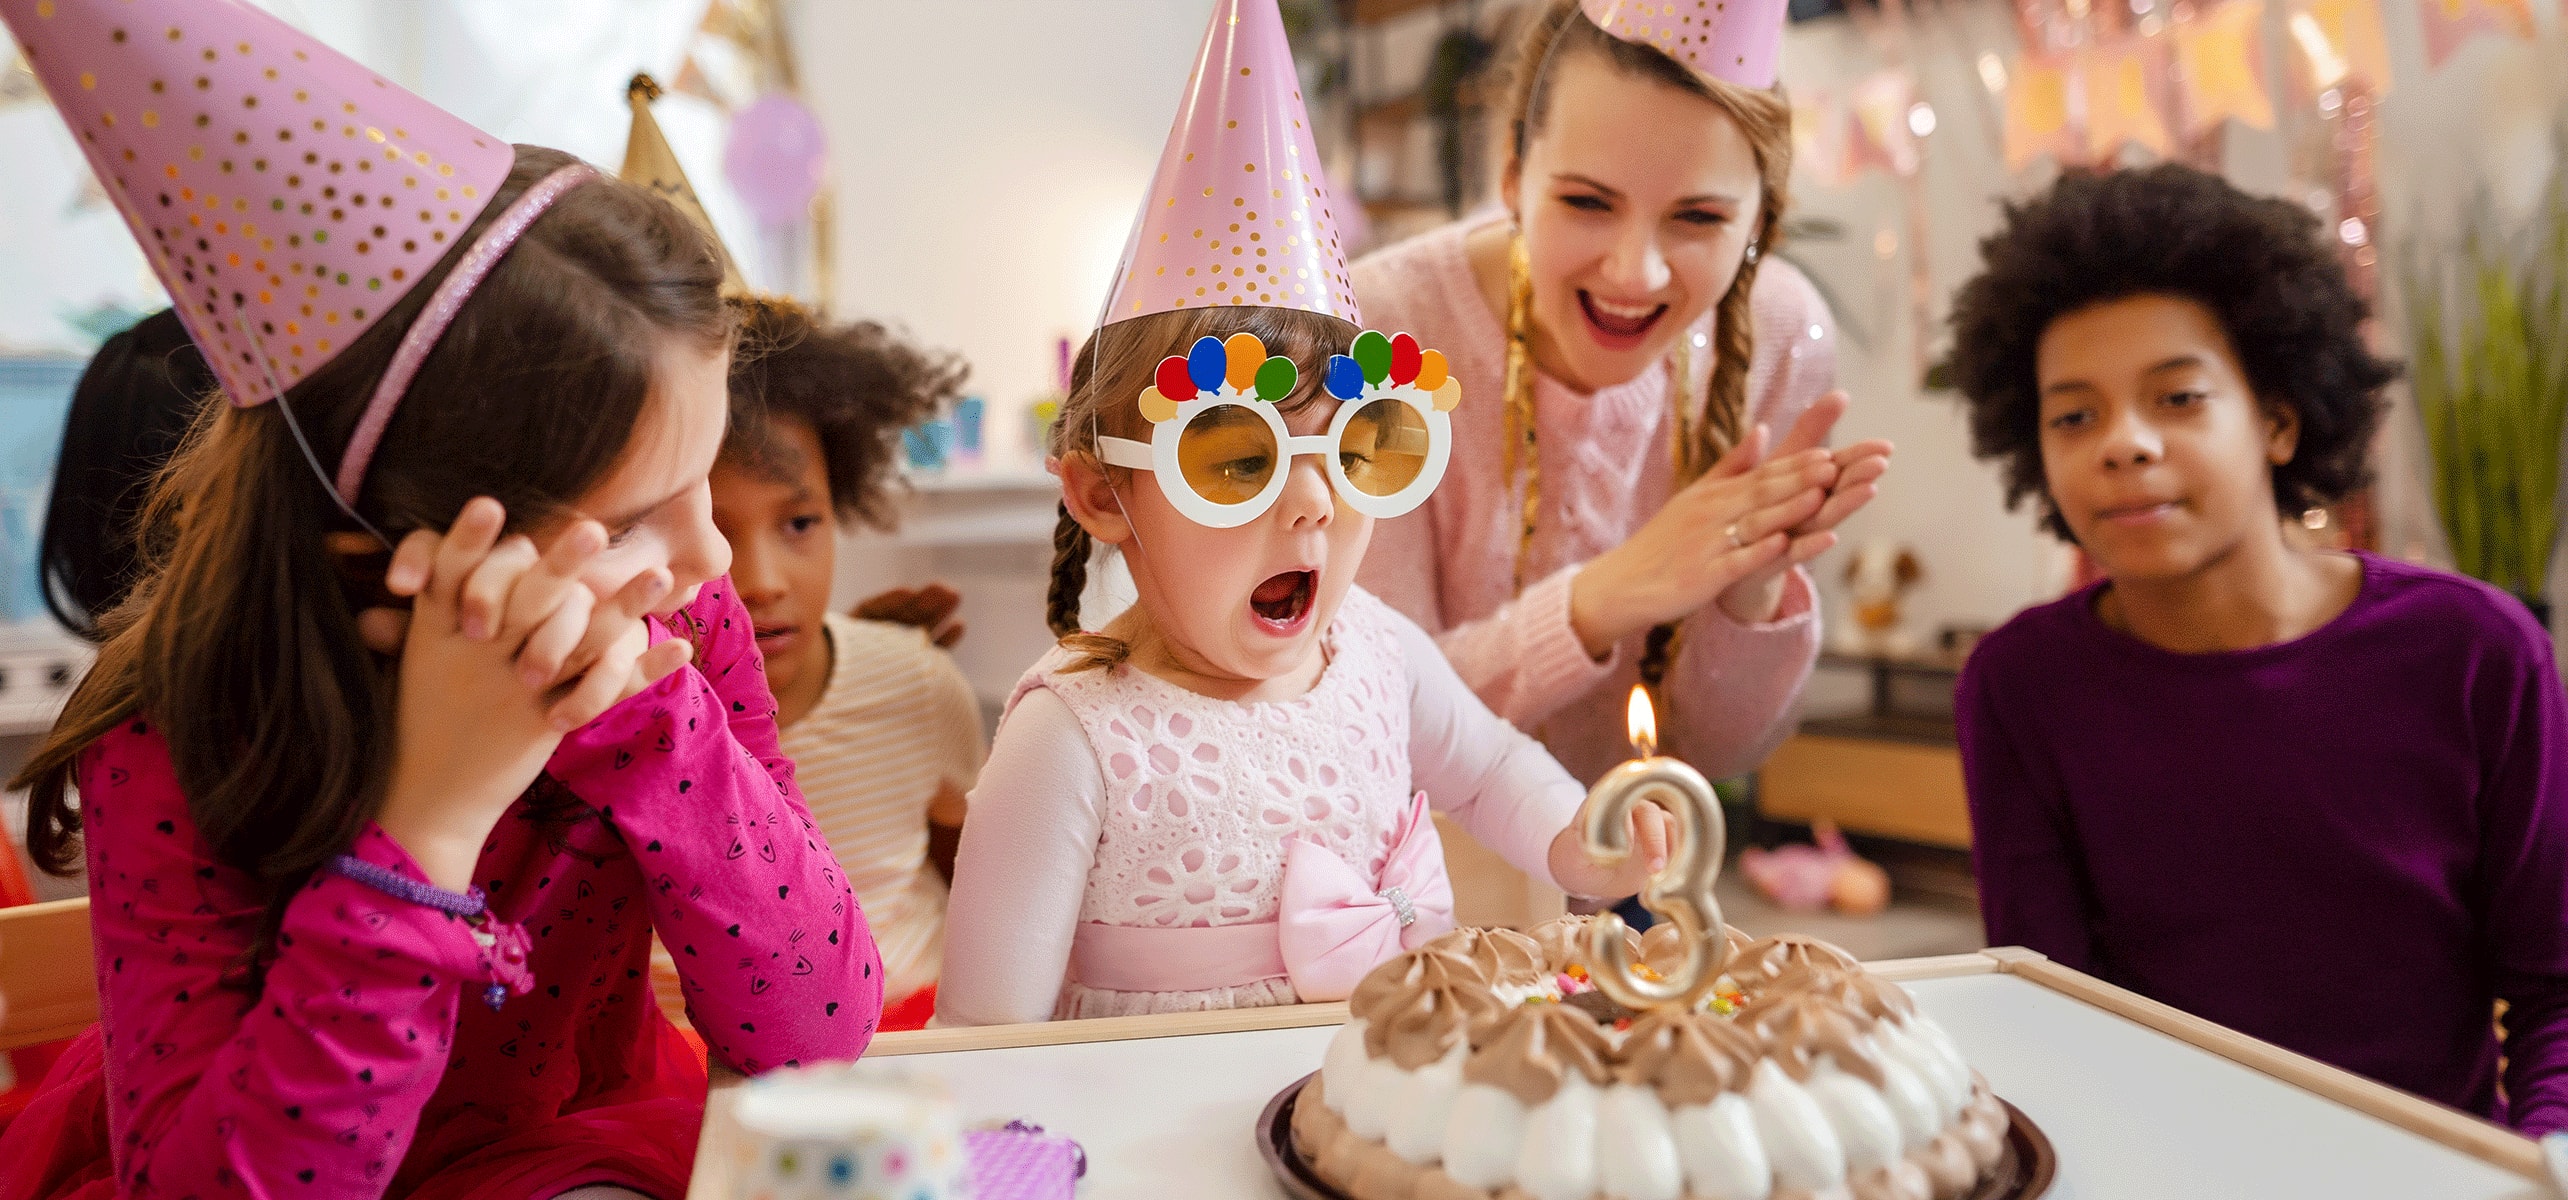 La lista de tareas definitiva para organizar una fiesta de cumpleaños